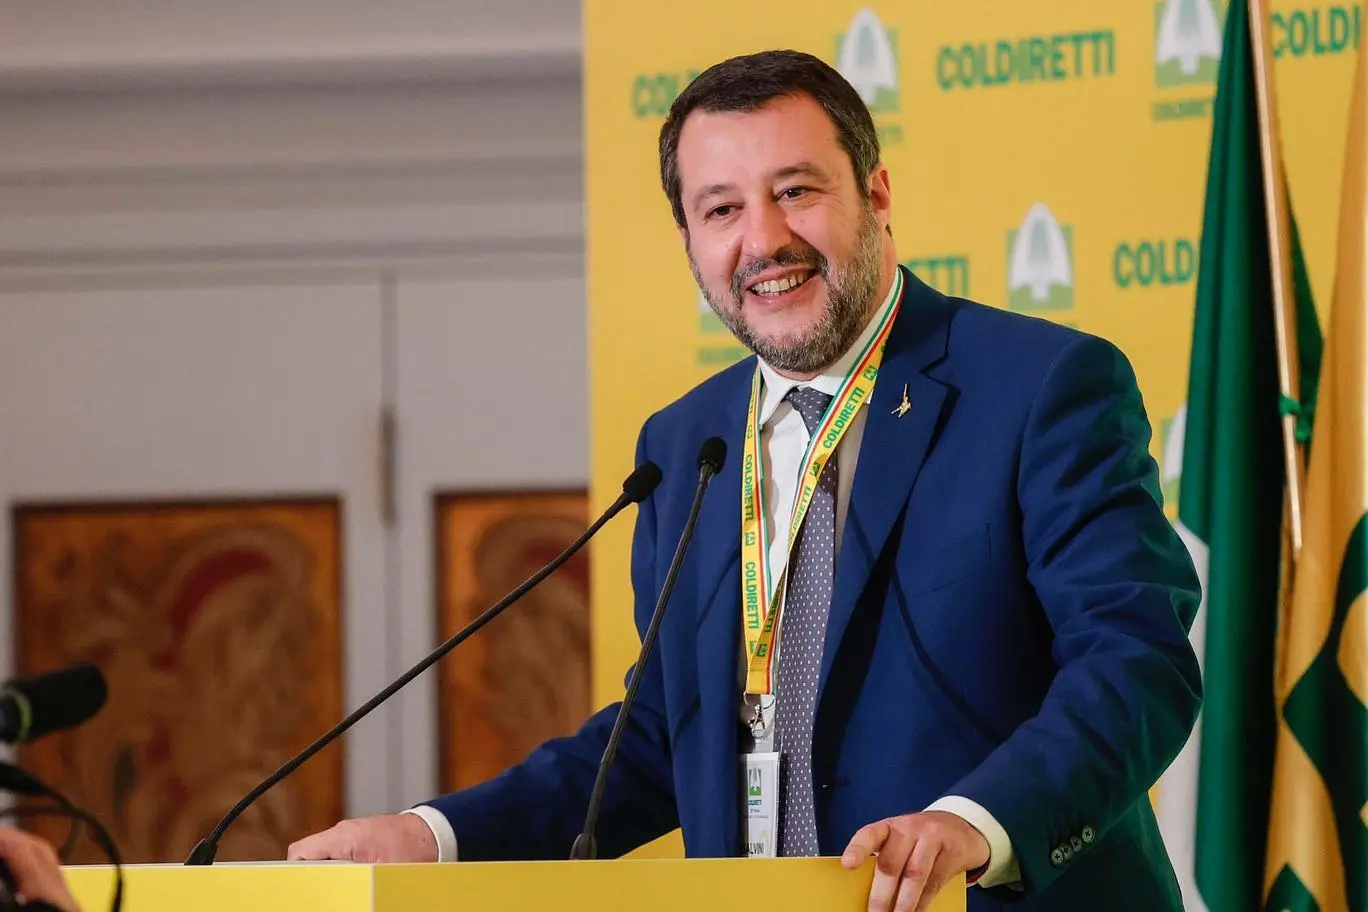 Matteo Salvini parla di Sardegna al forum di Coldiretti (Foto da profilo Facebook)